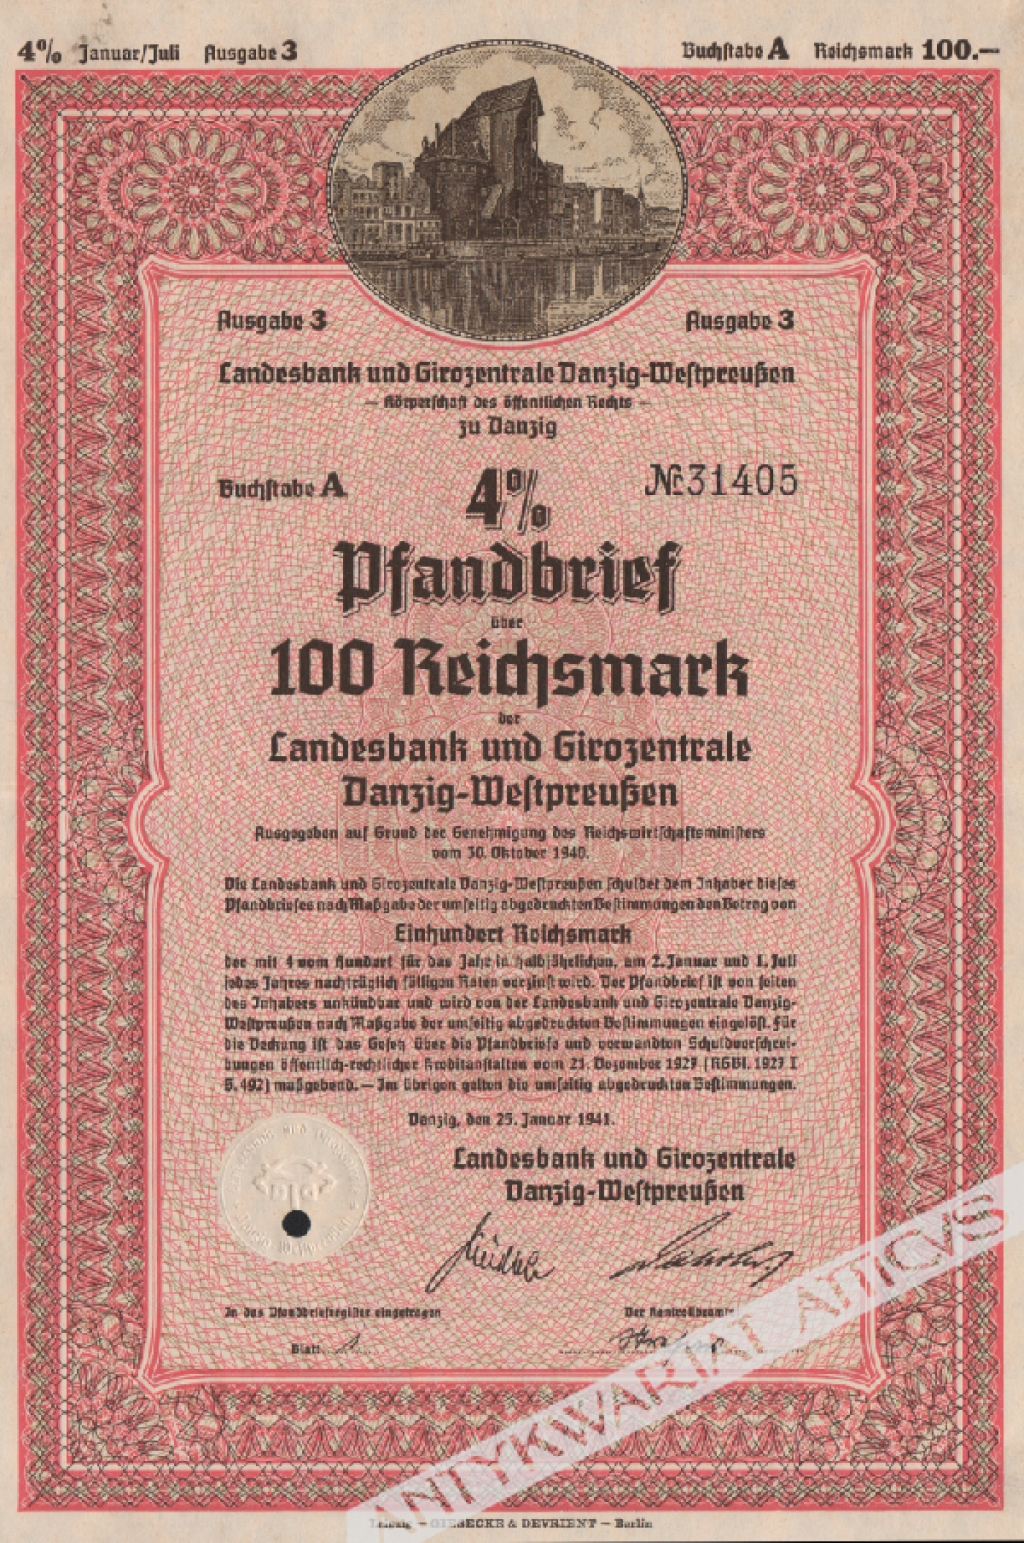 [list zastawny] 4% Pfandbrief uber 100 Reichsmark der Landesbank und Girozentrale Danzig-Westpreussen